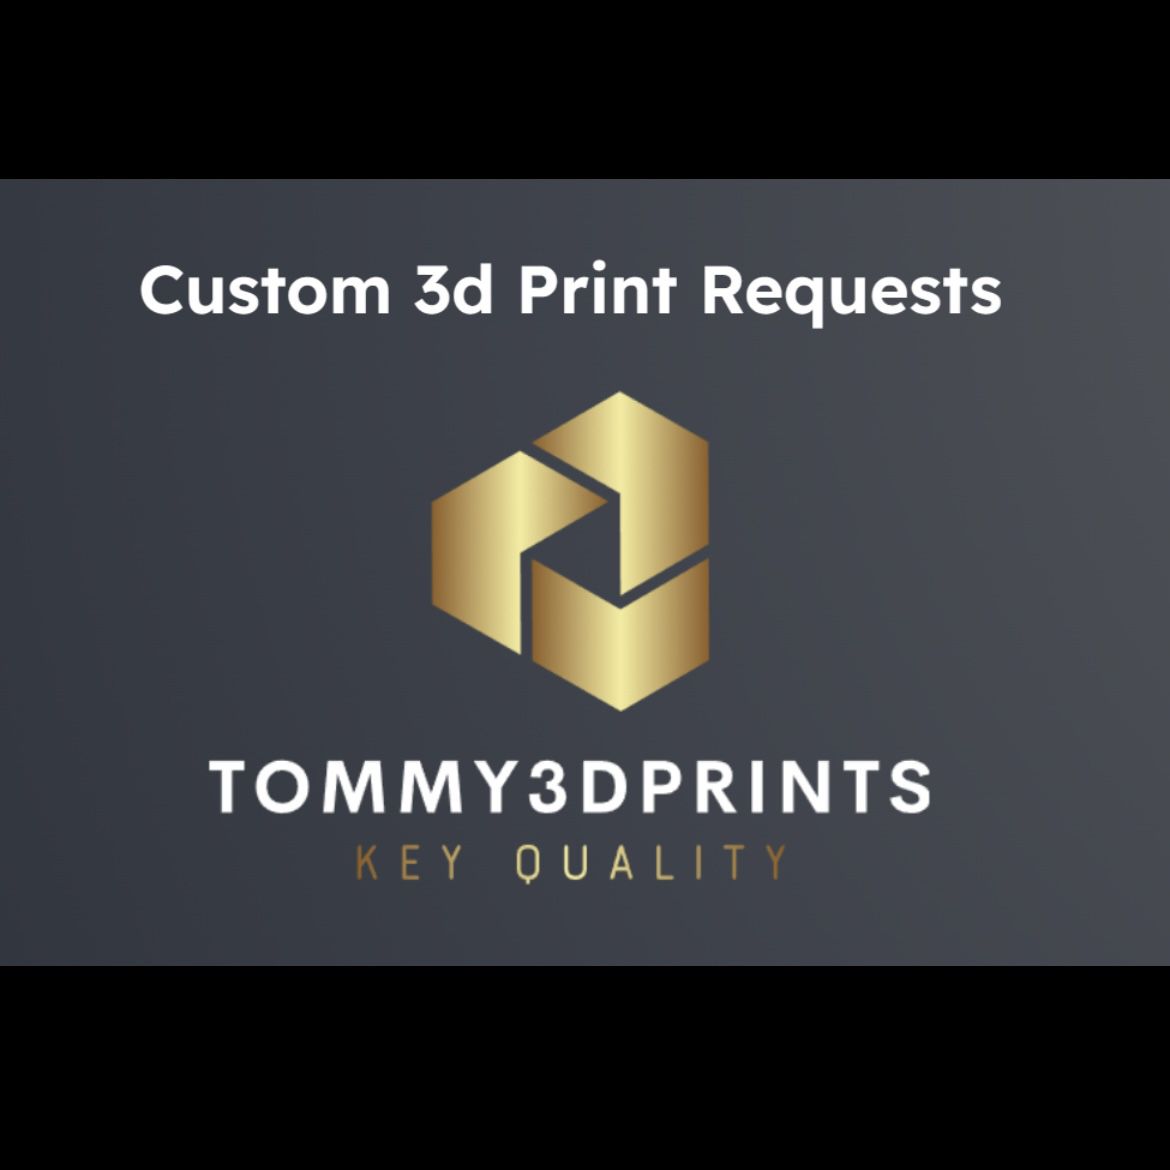 Custom 3d Print Requests